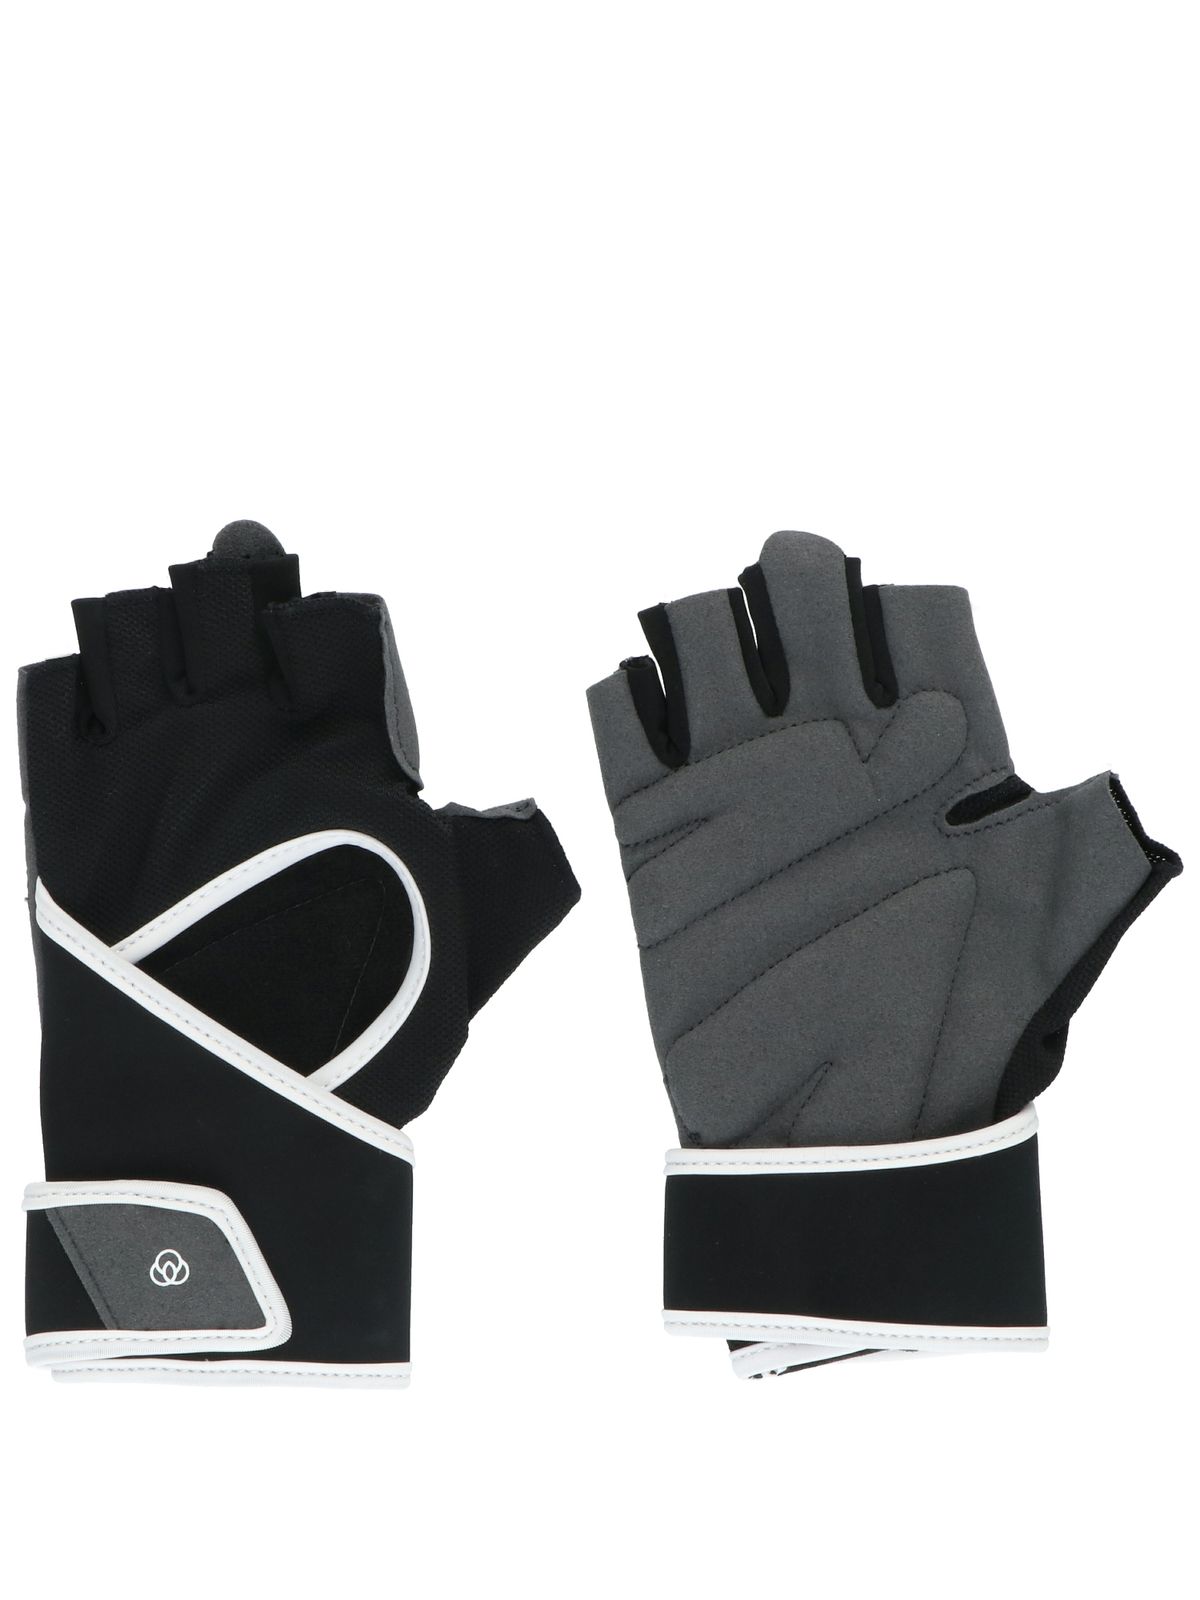 Bali Fit Gloves II